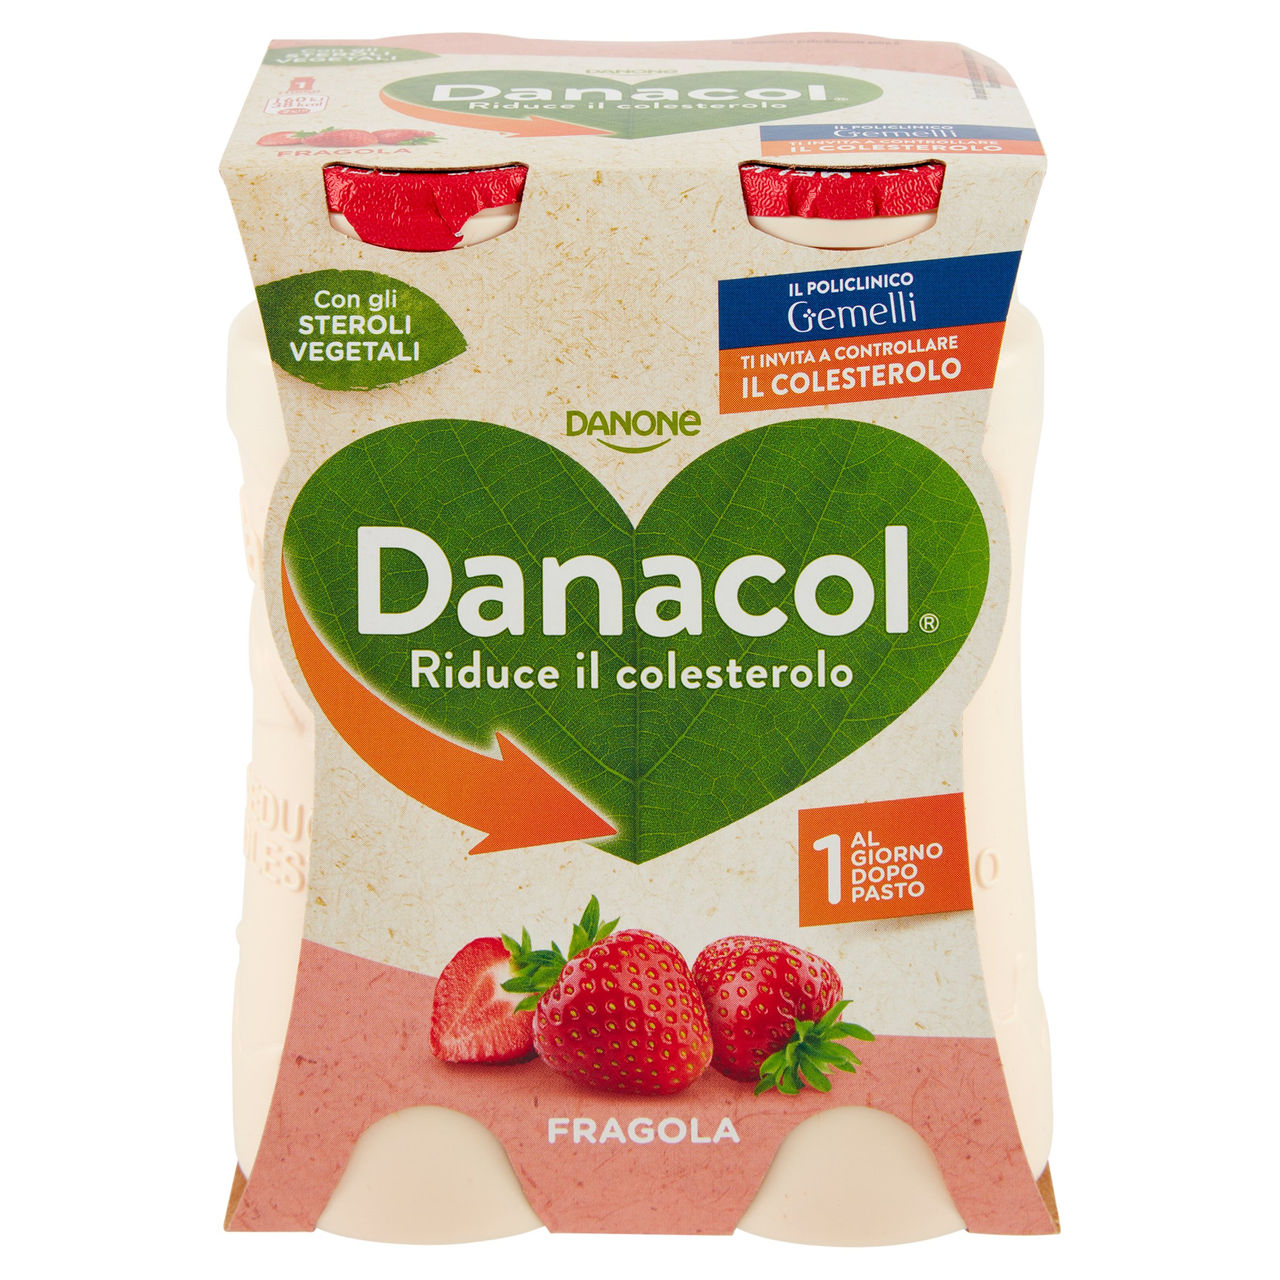 DANACOL Yogurt da bere, Riduce il Colesterolo grazie agli Steroli Vegetali, gusto Fragola, 4x100g